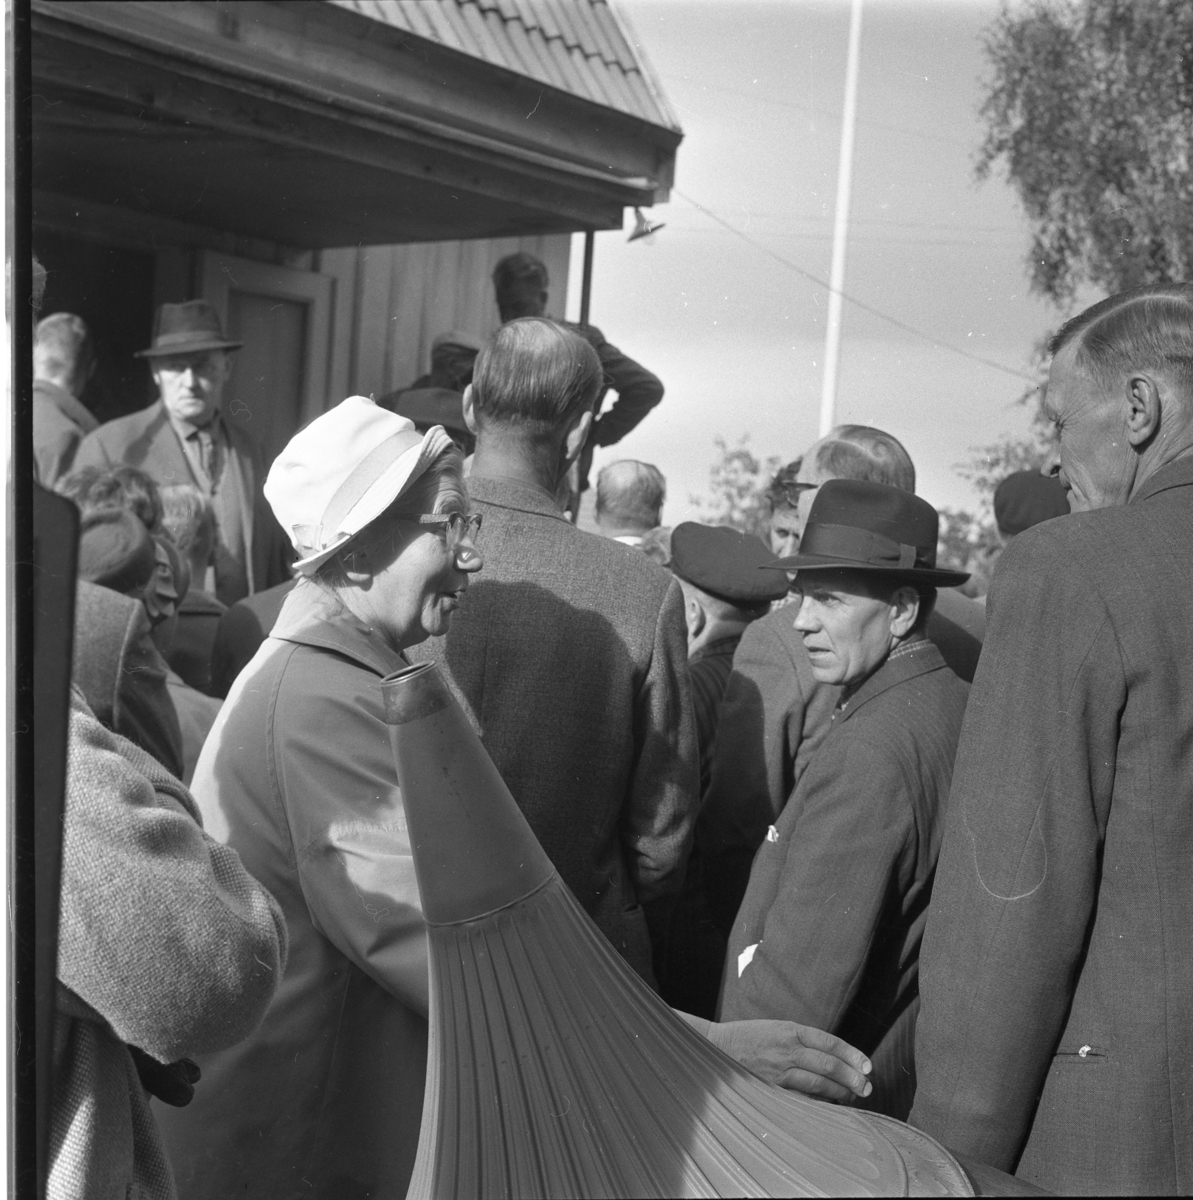 En okänd folksamling, möjligen auktion. Mannen i hatt som vänder sig mot kameran är Roy Andersson i Reaby. Damen i vit hatt är Anna Andersson och till höger står Karl Andersson.